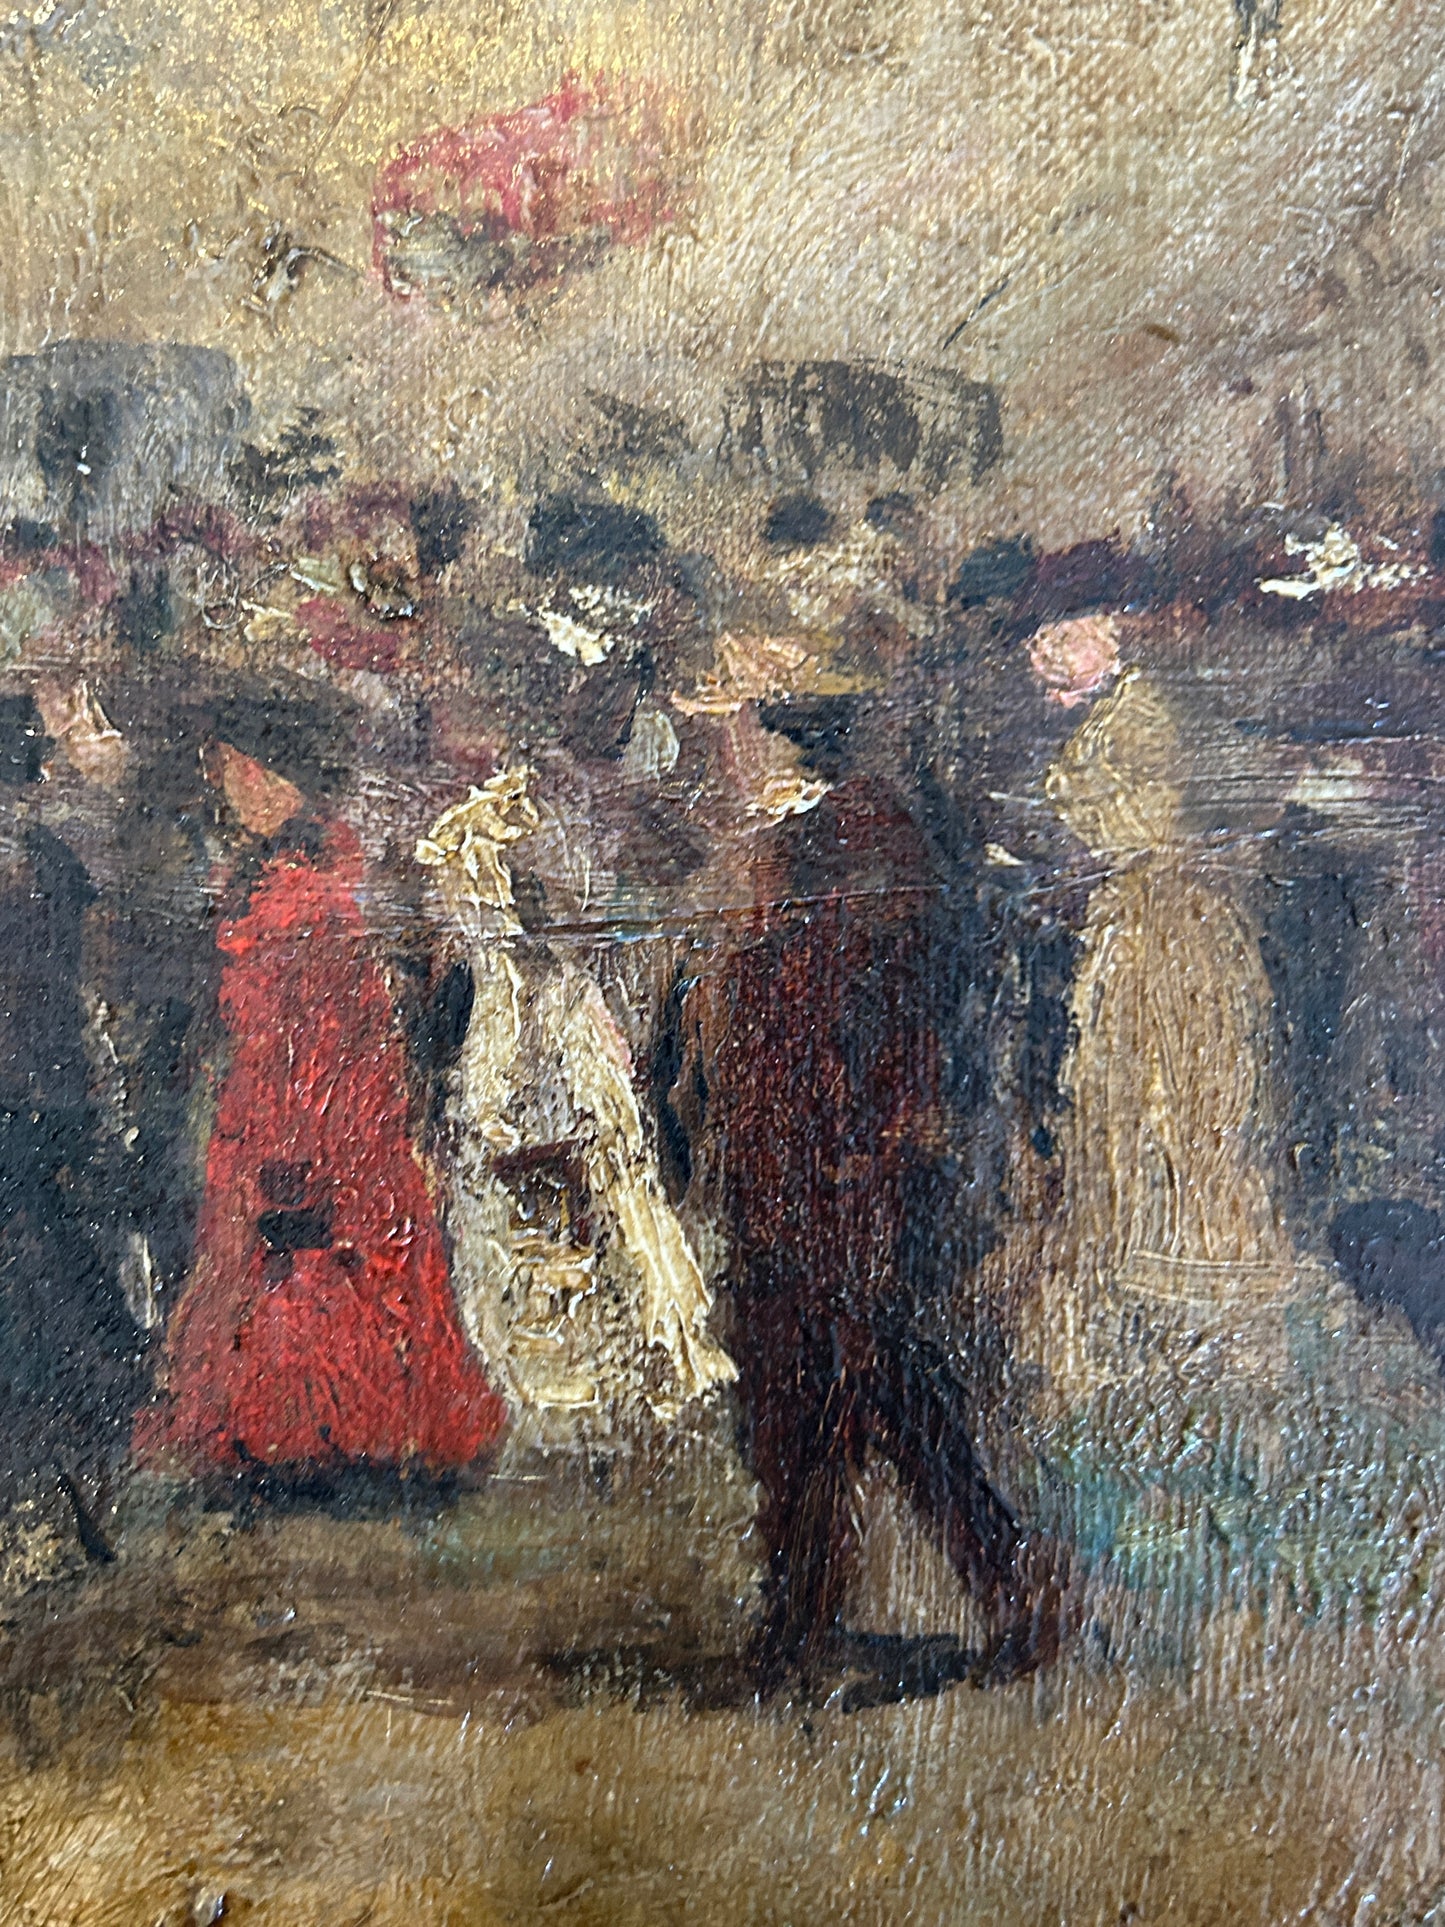 Olio su tela con scena di strada impressionista del XX secolo a Parigi